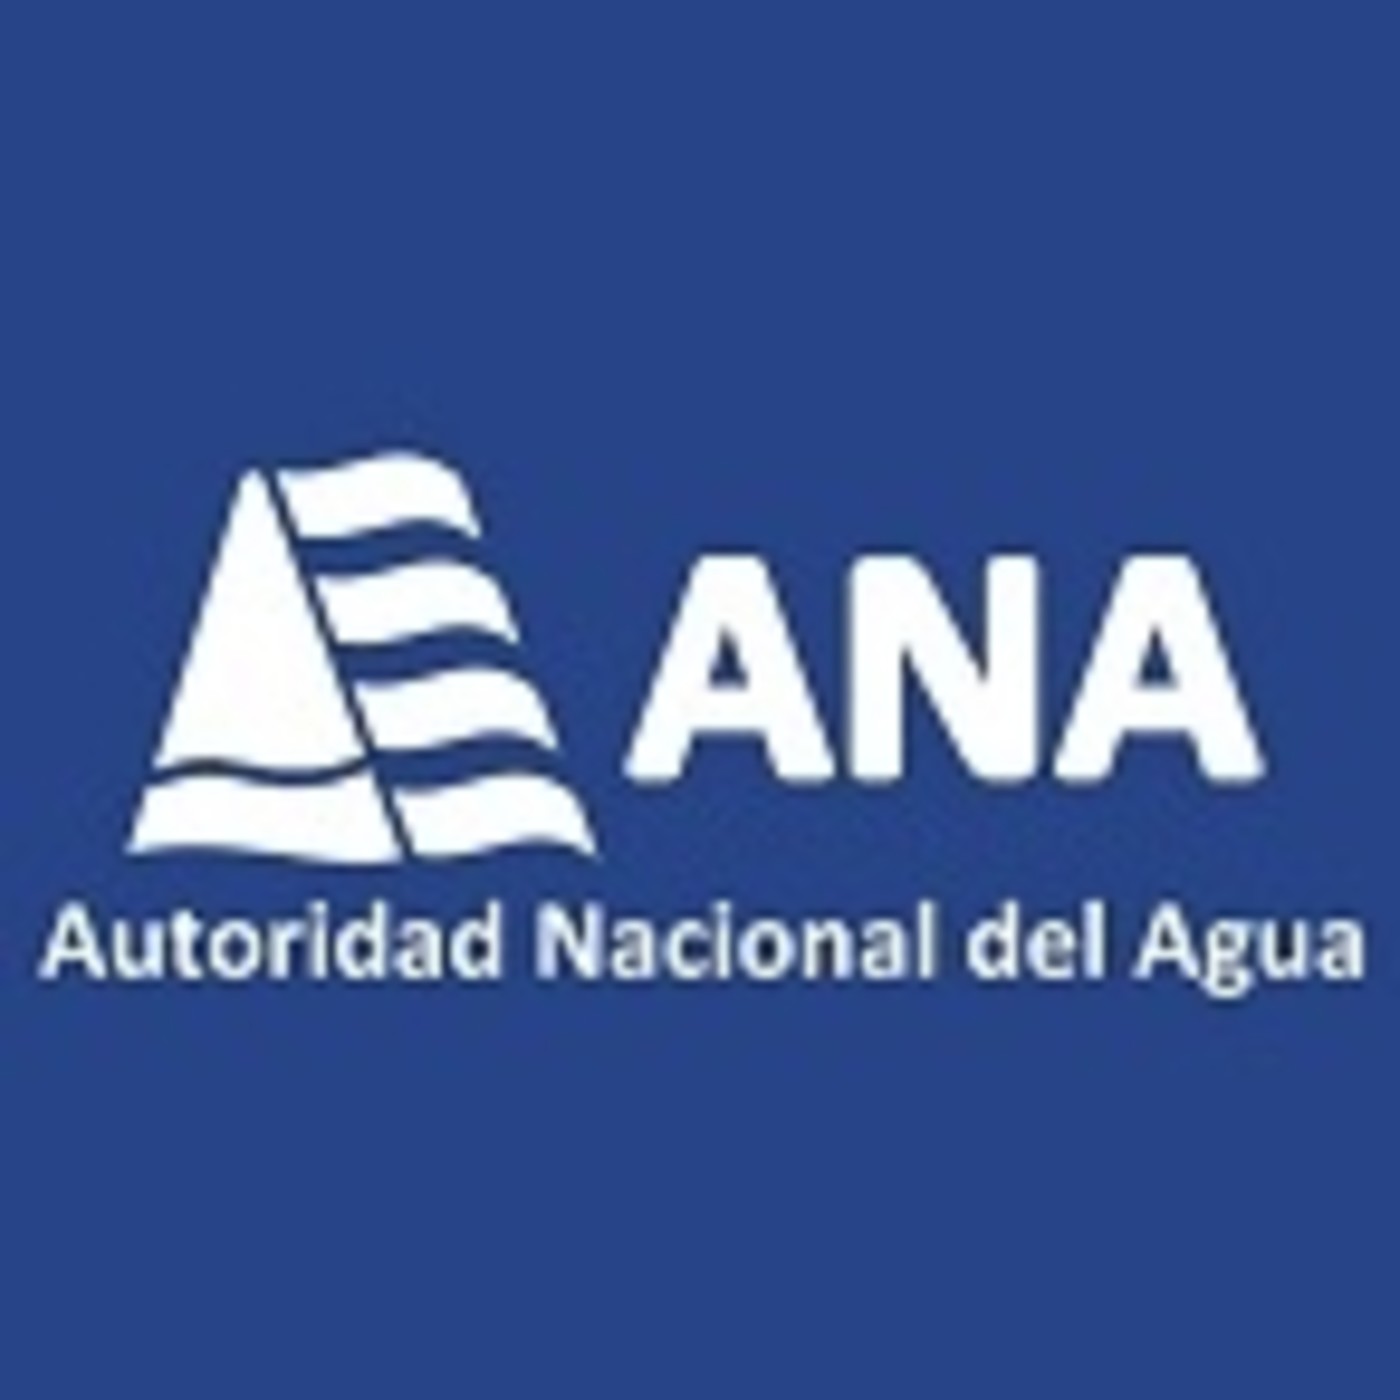 ANA en los medios - Autoridad Nacional del Agua presentó cuaderno de trabajo escolar (Radio Nacional)